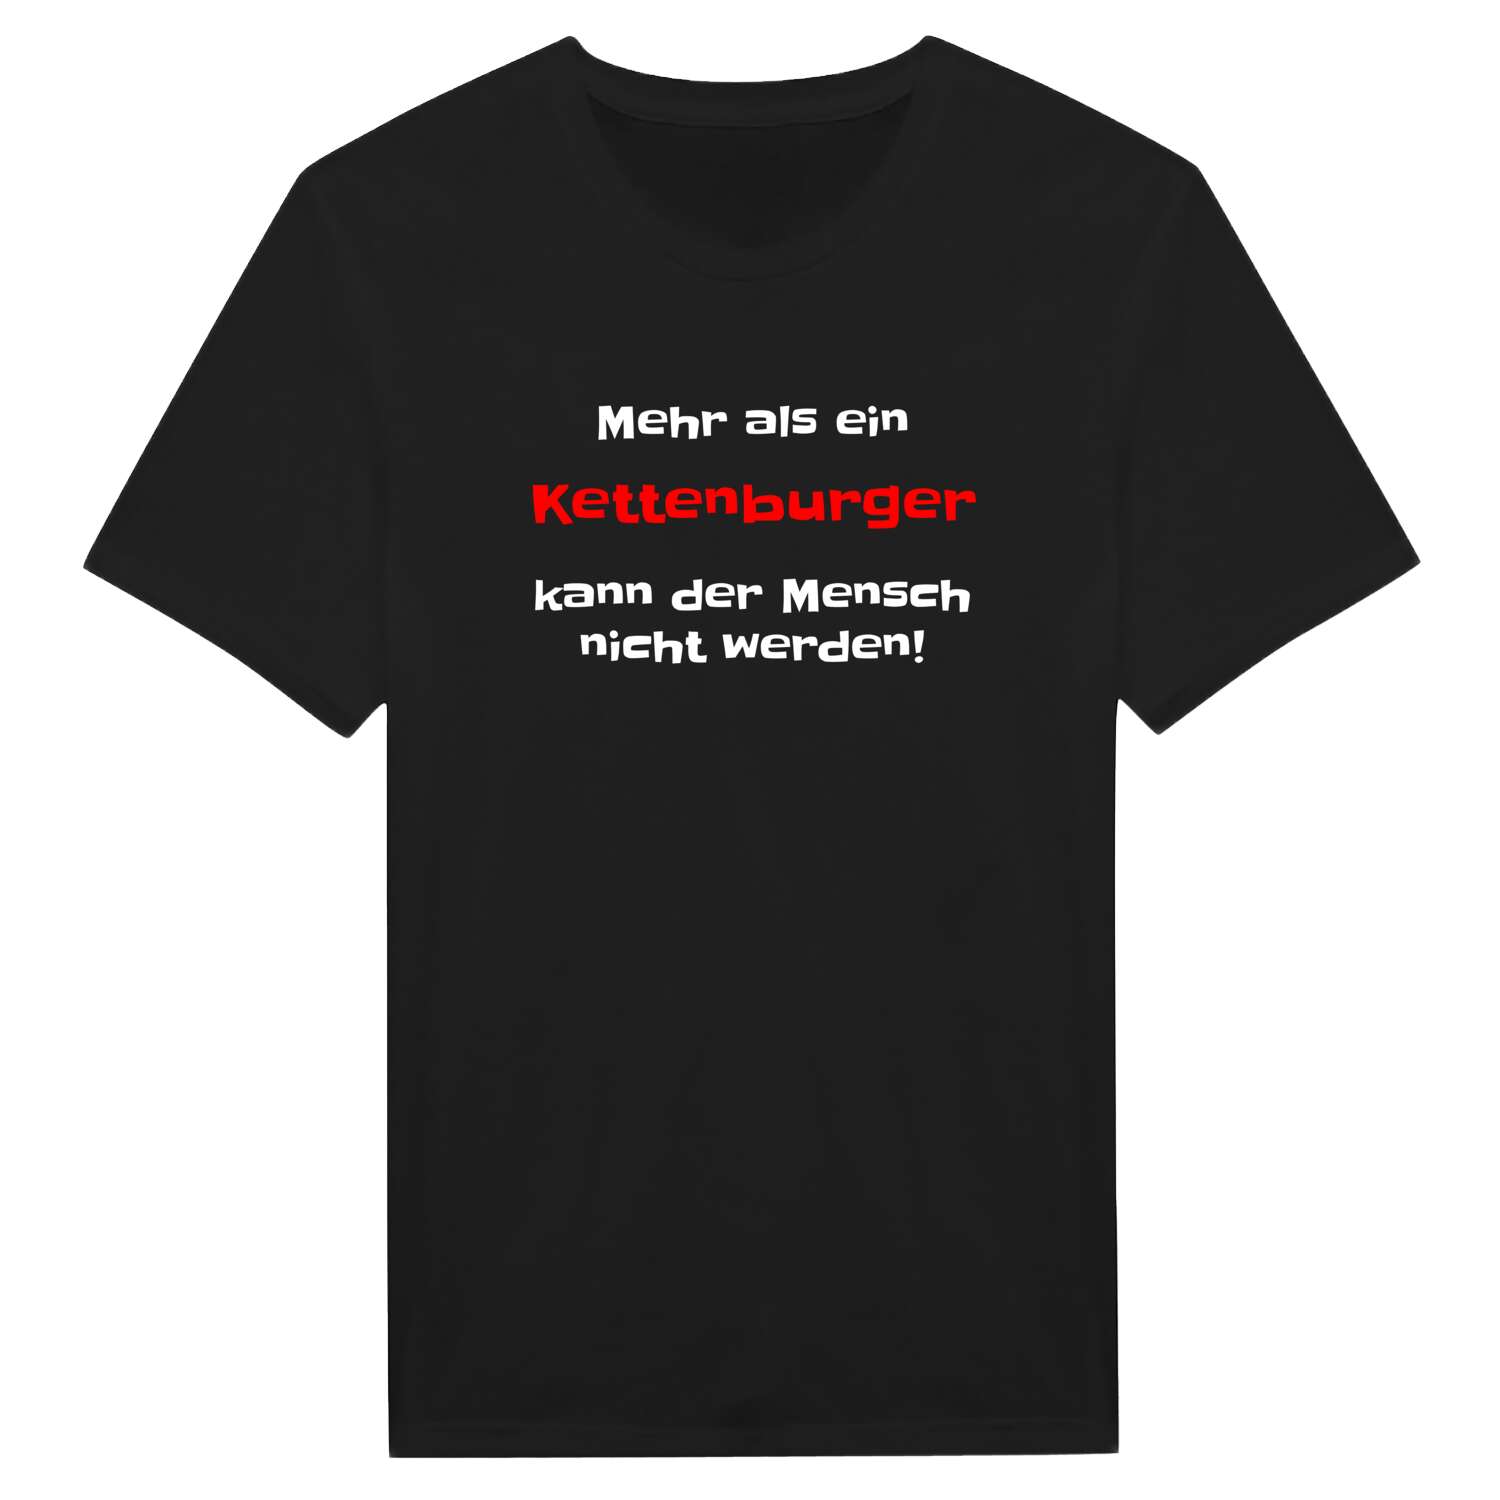 Kettenburg T-Shirt »Mehr als ein«